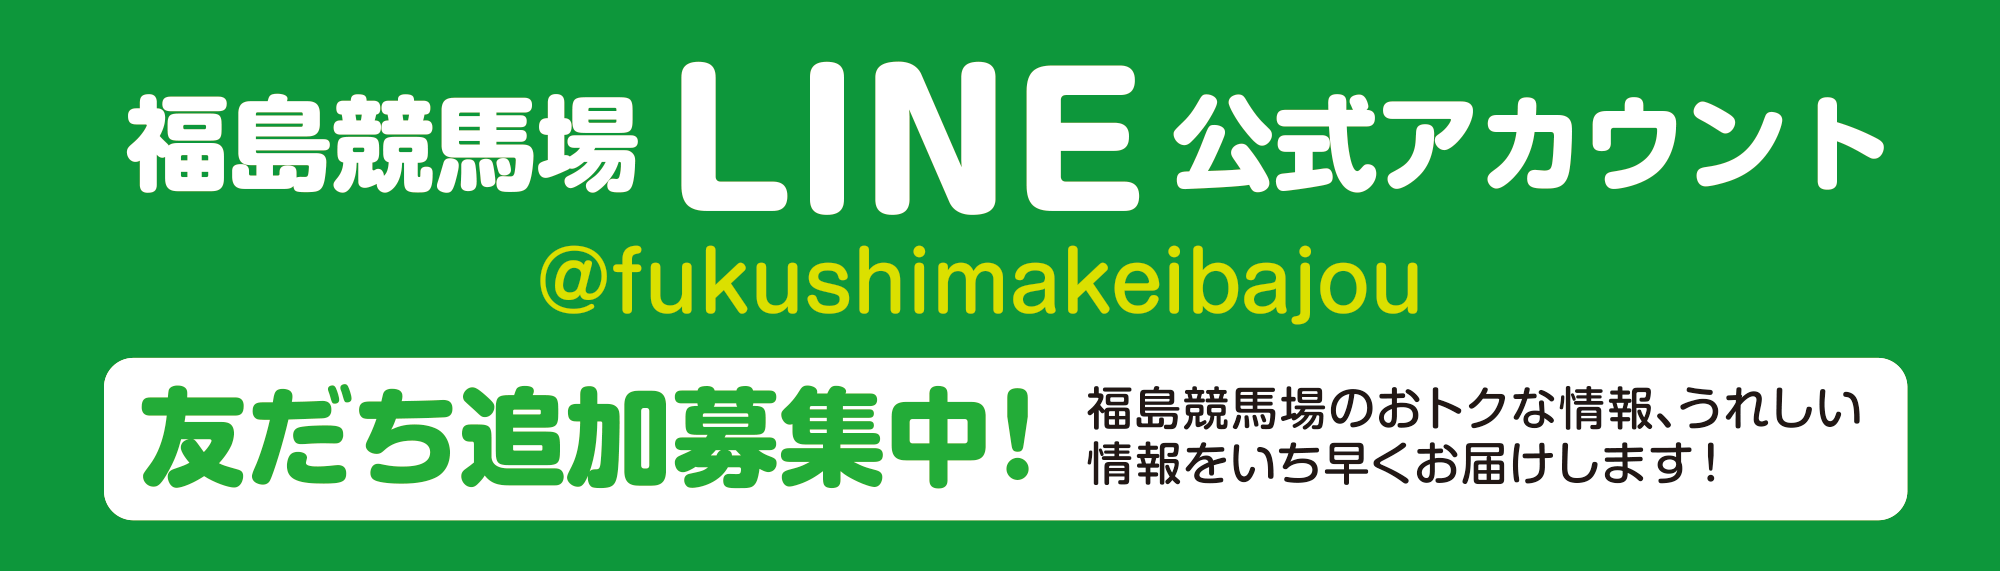 
福島競馬場LINE公式アカウント
@fukushimakeibajou
友だち追加募集中！
福島競馬場のおトクな情報、うれしい情報をいち早くお届けします！
